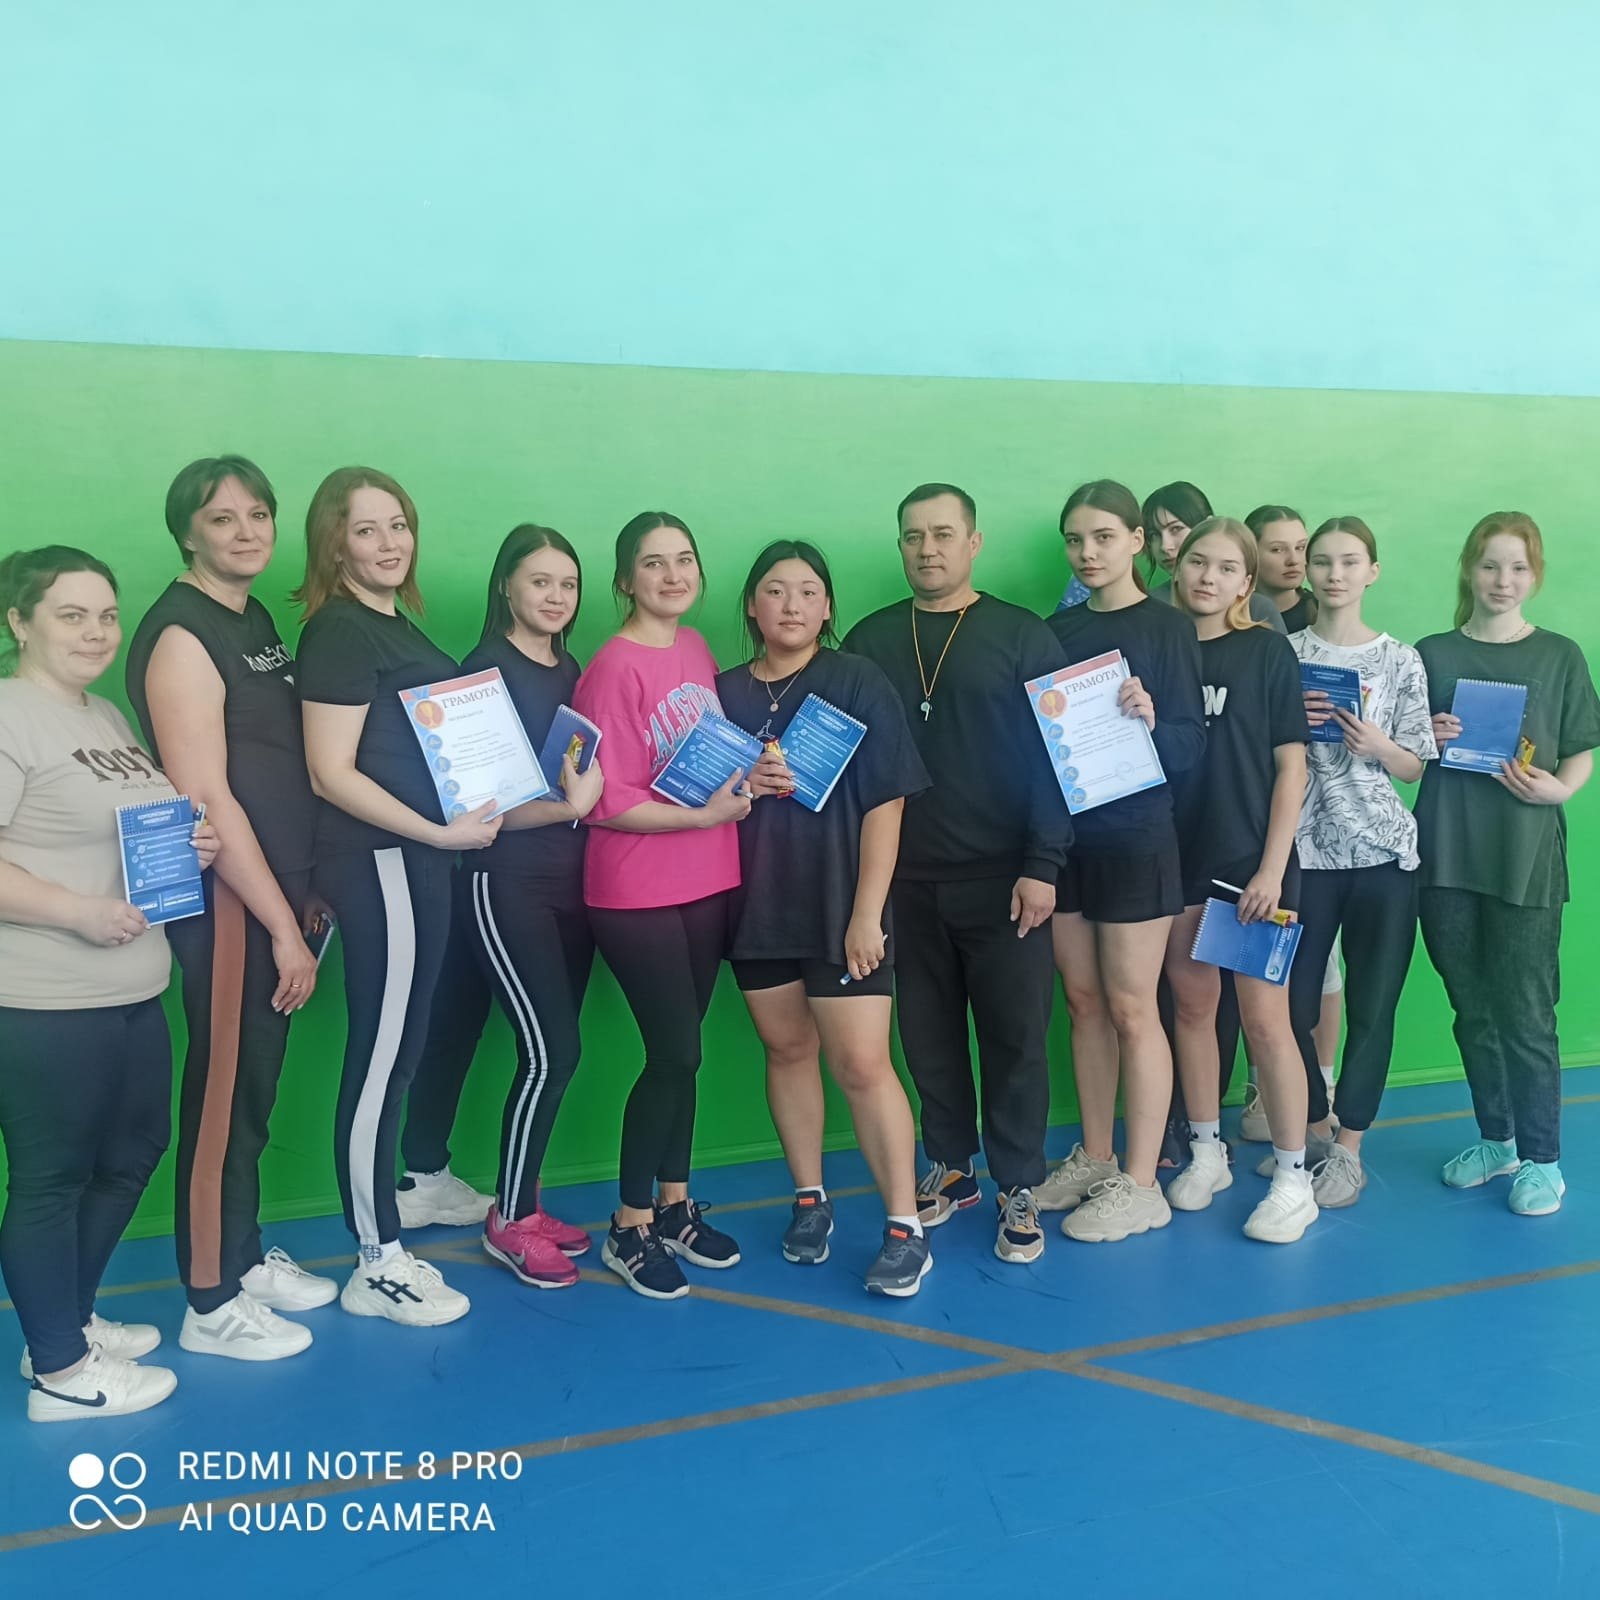 15 марта в МКОУ Юргамышская СОШ прошла товарищеская встреча по волейболу между учащимися и учителями..